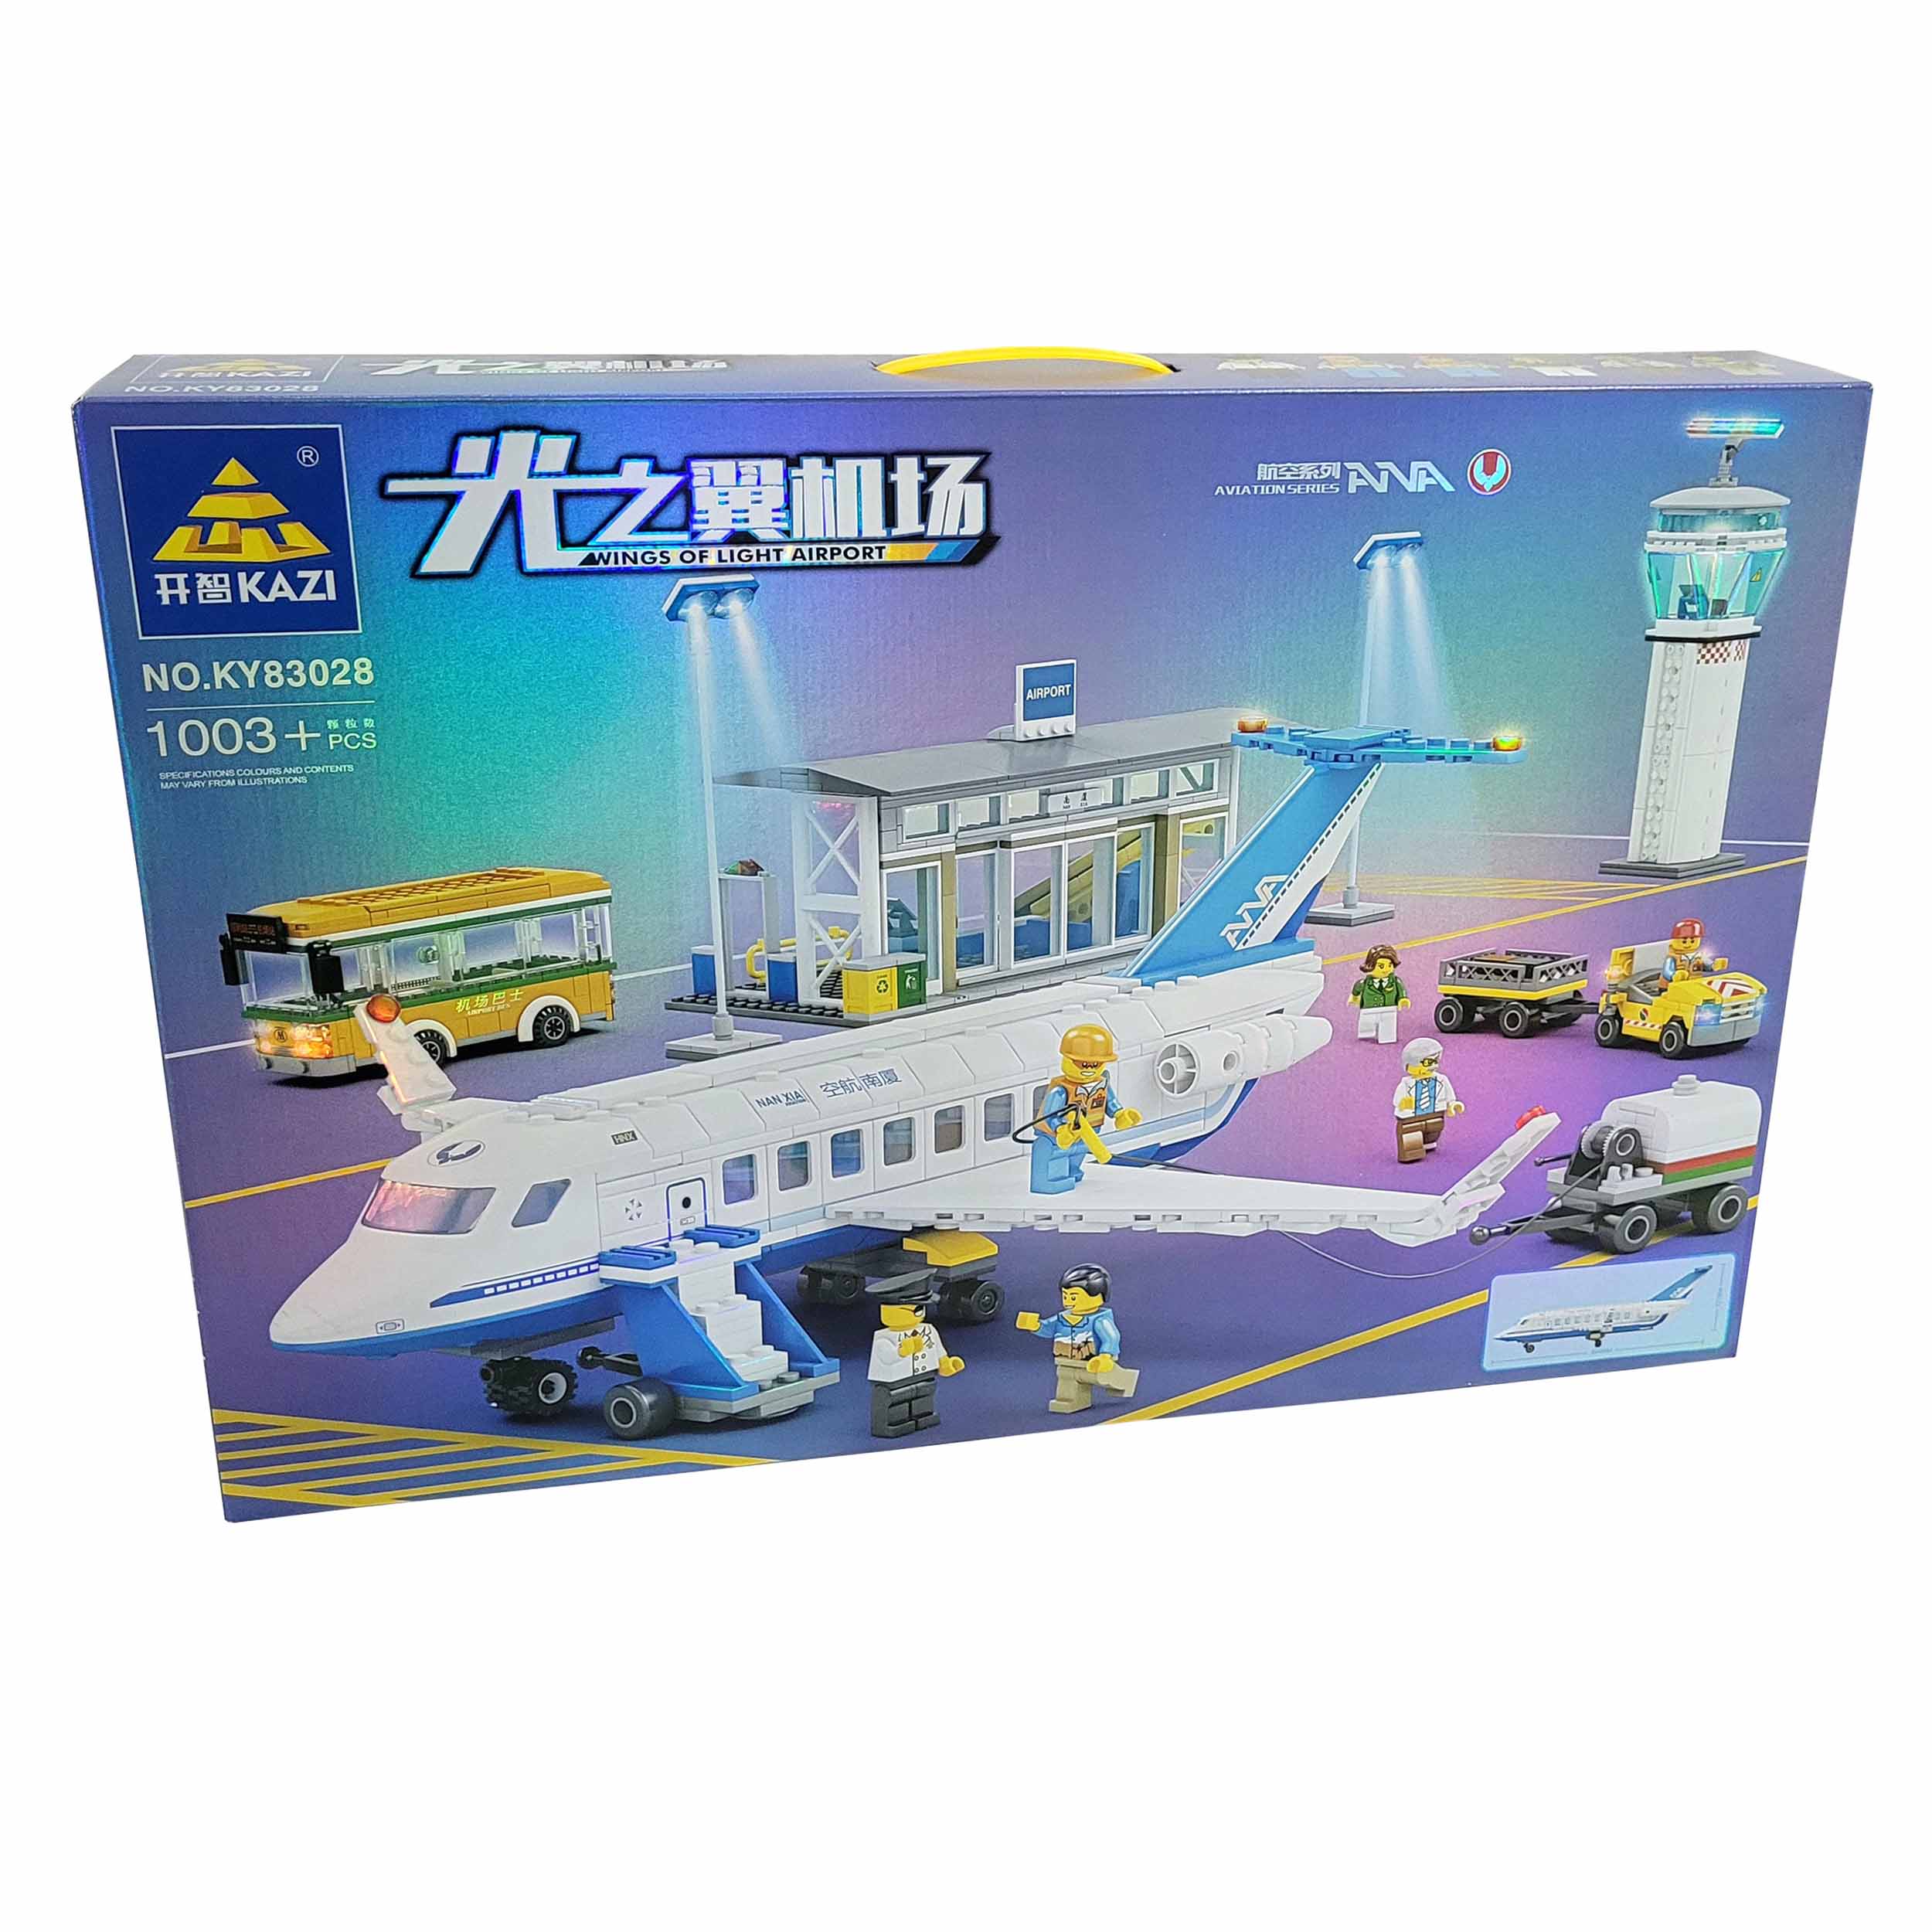 ساختنی طرح هواپیما مسافربری مدل فرودگاه و برج مراقبت کد KY83028